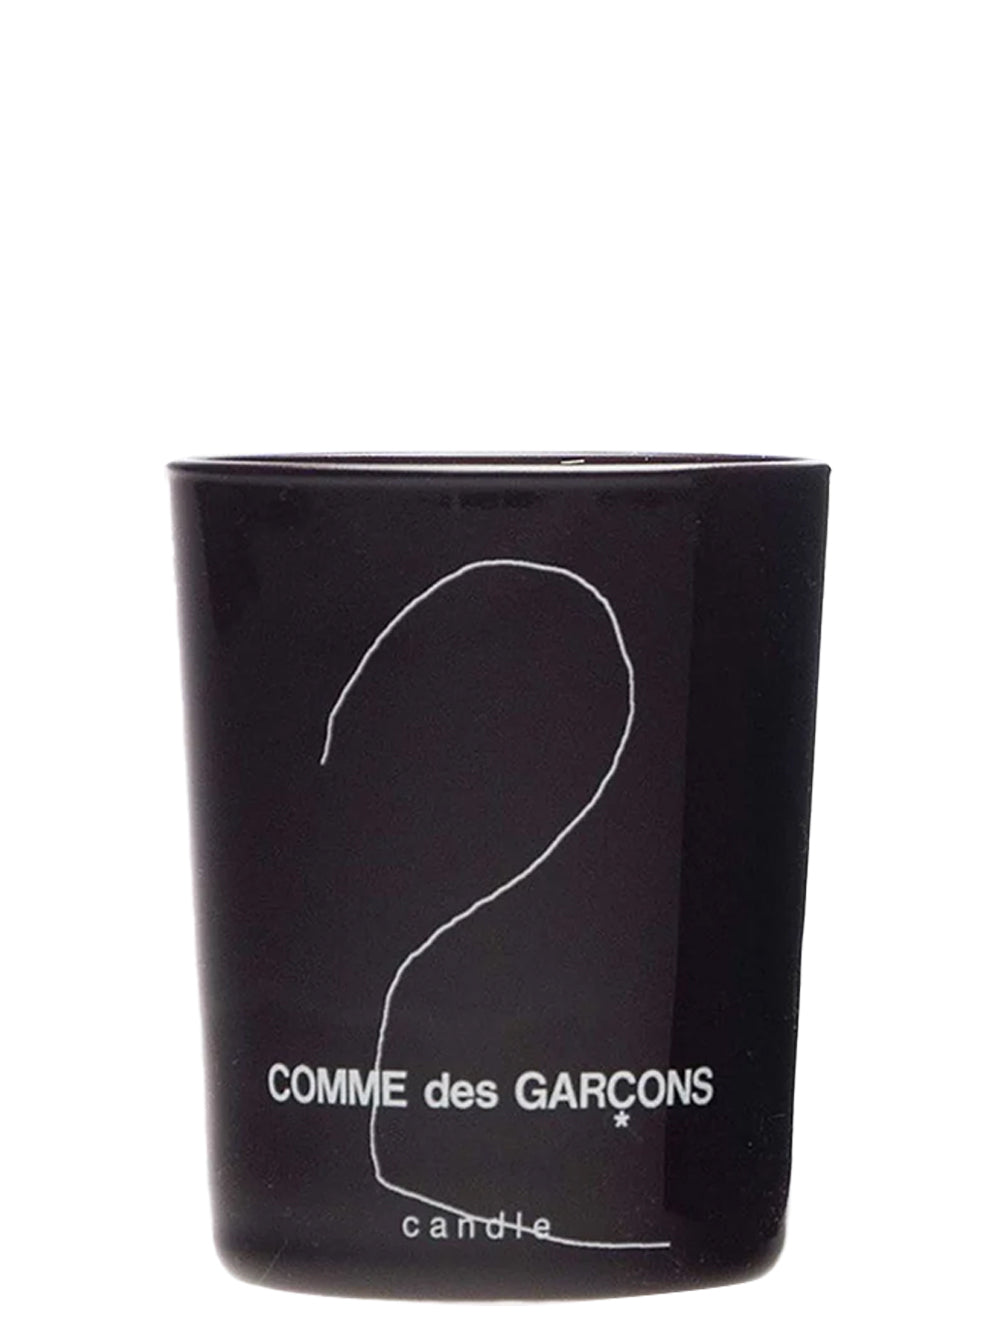 Candle Comme Des Garcons 2 150g